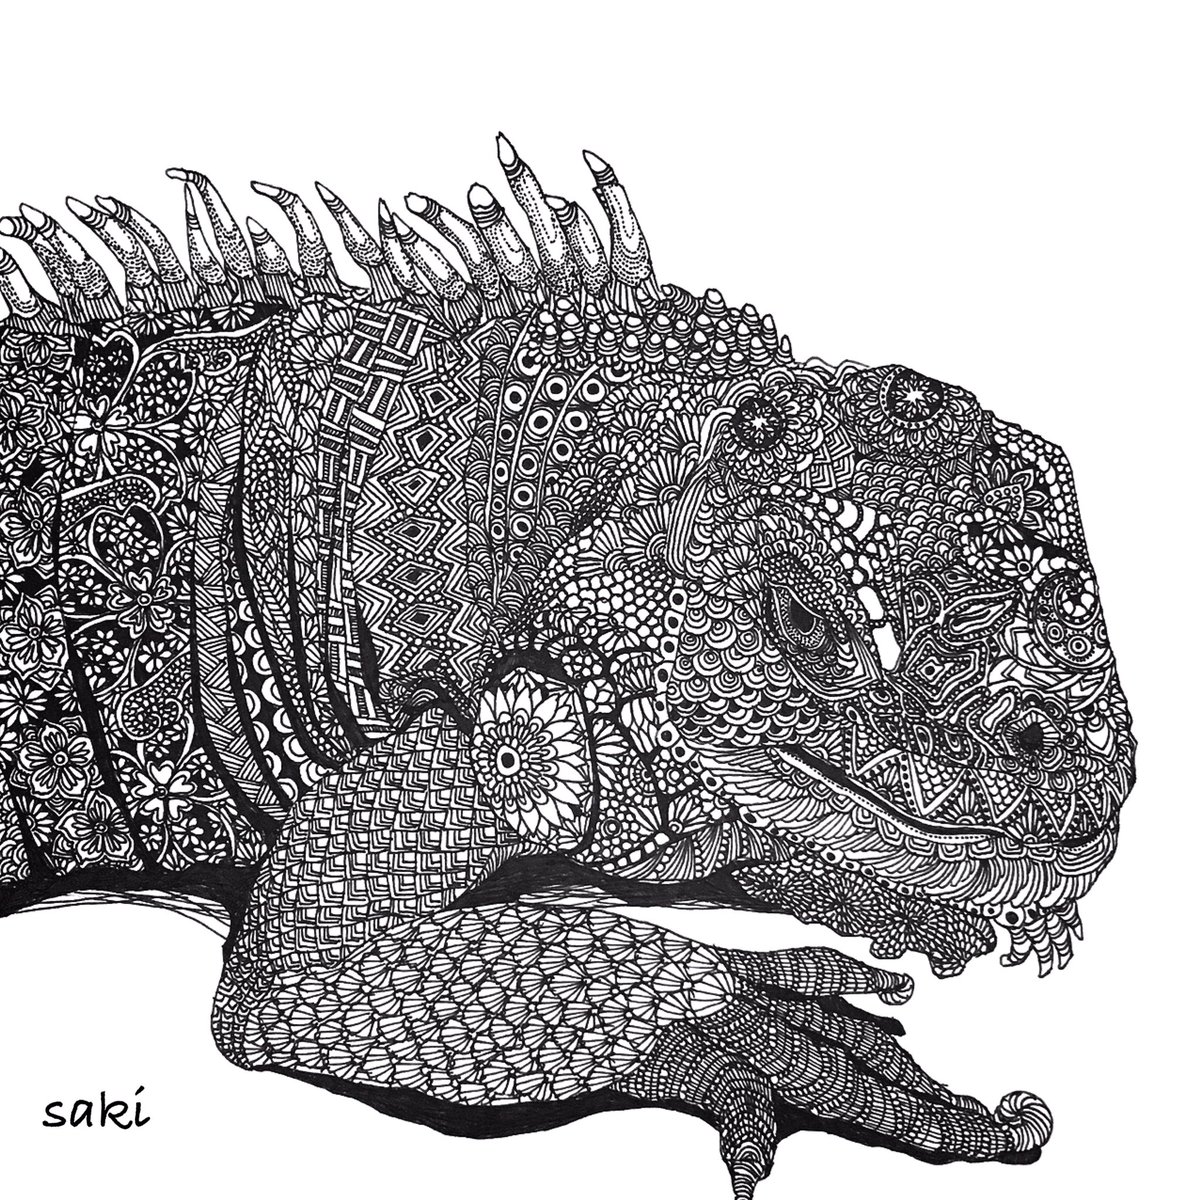 Saki ボールペン画アーティスト イグアナさん T Co Xzoyr1rtgu イラスト 爬虫類 イグアナ Illustration Reptile Iguana